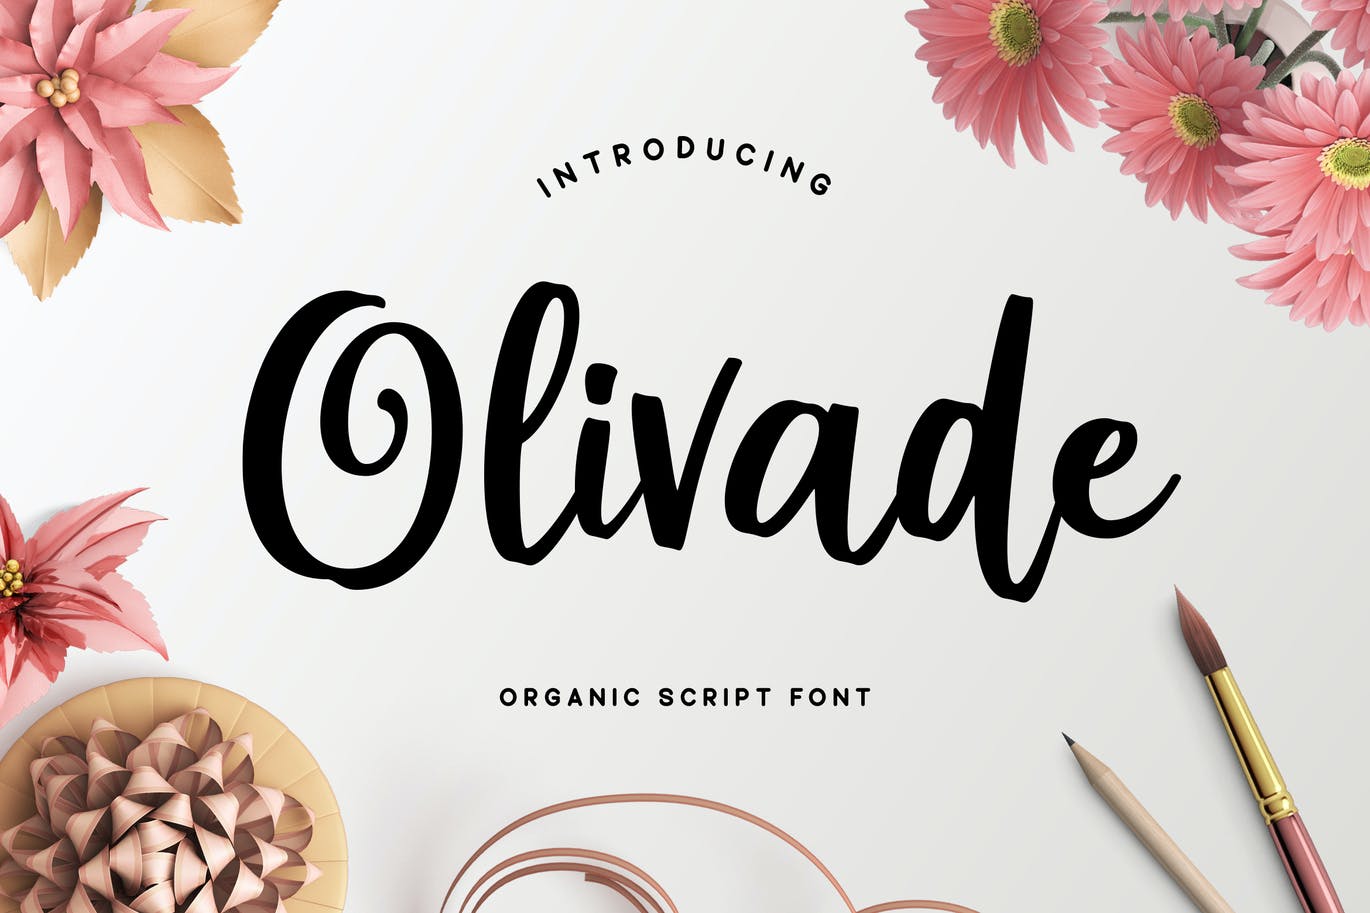 清新有机的手写脚本字体 Olivade – Handwritten Script 设计素材 第1张